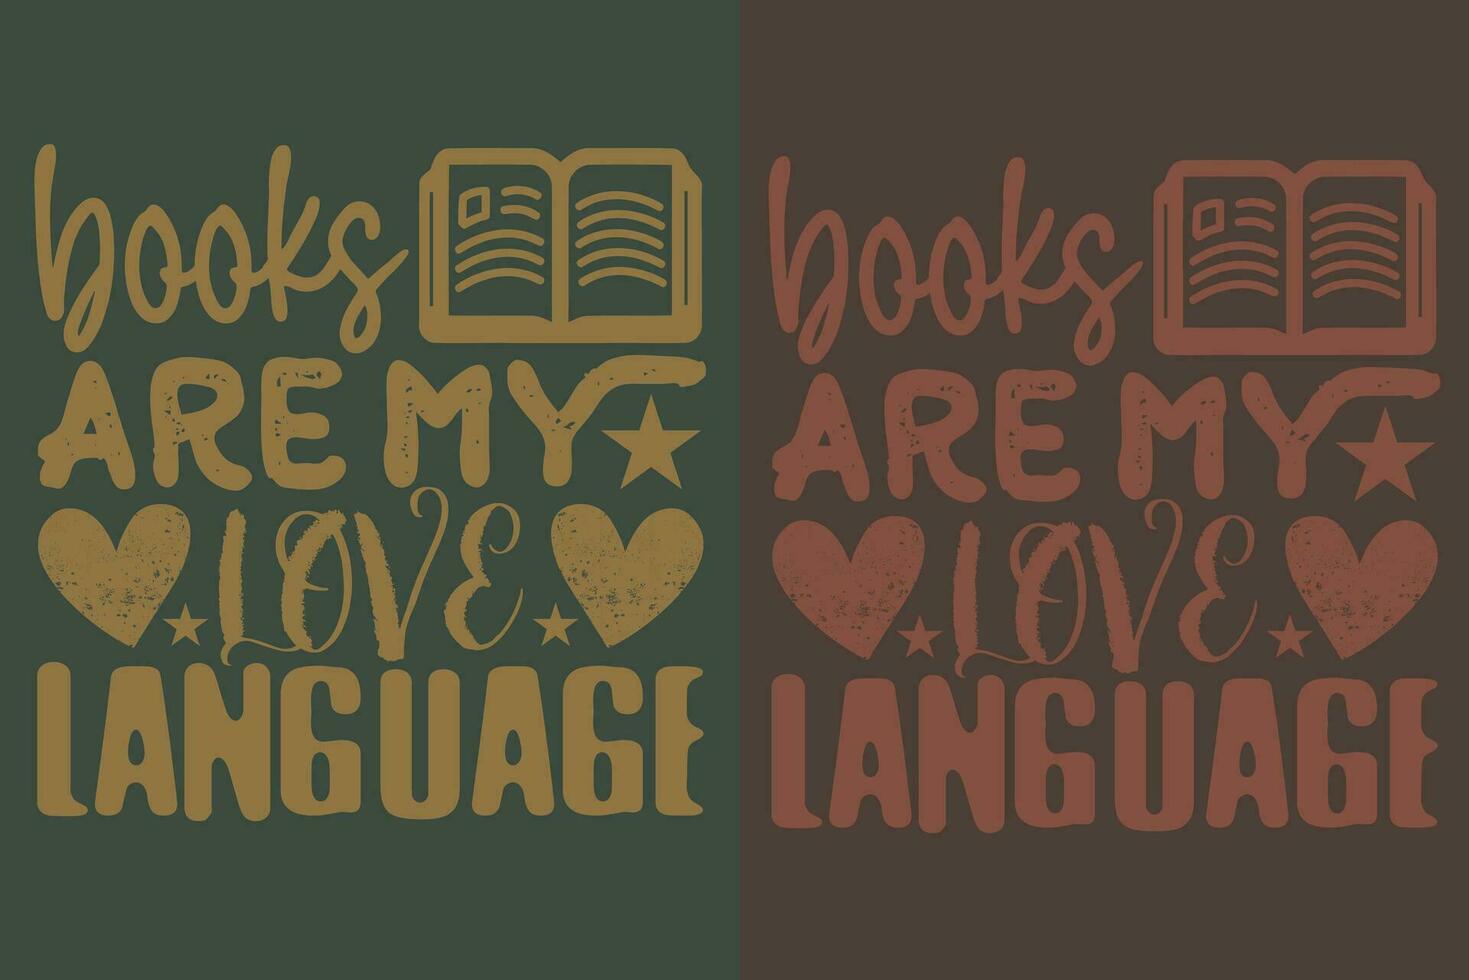 böcker är min kärlek språk, bok älskare skjorta, litterär skjorta, bokälskande skjorta, läsning bok, bibliotekarie skjorta, bok läsare skjorta, inspirera skjorta, gåva för bibliotekarie, gåva för bok älskare vektor